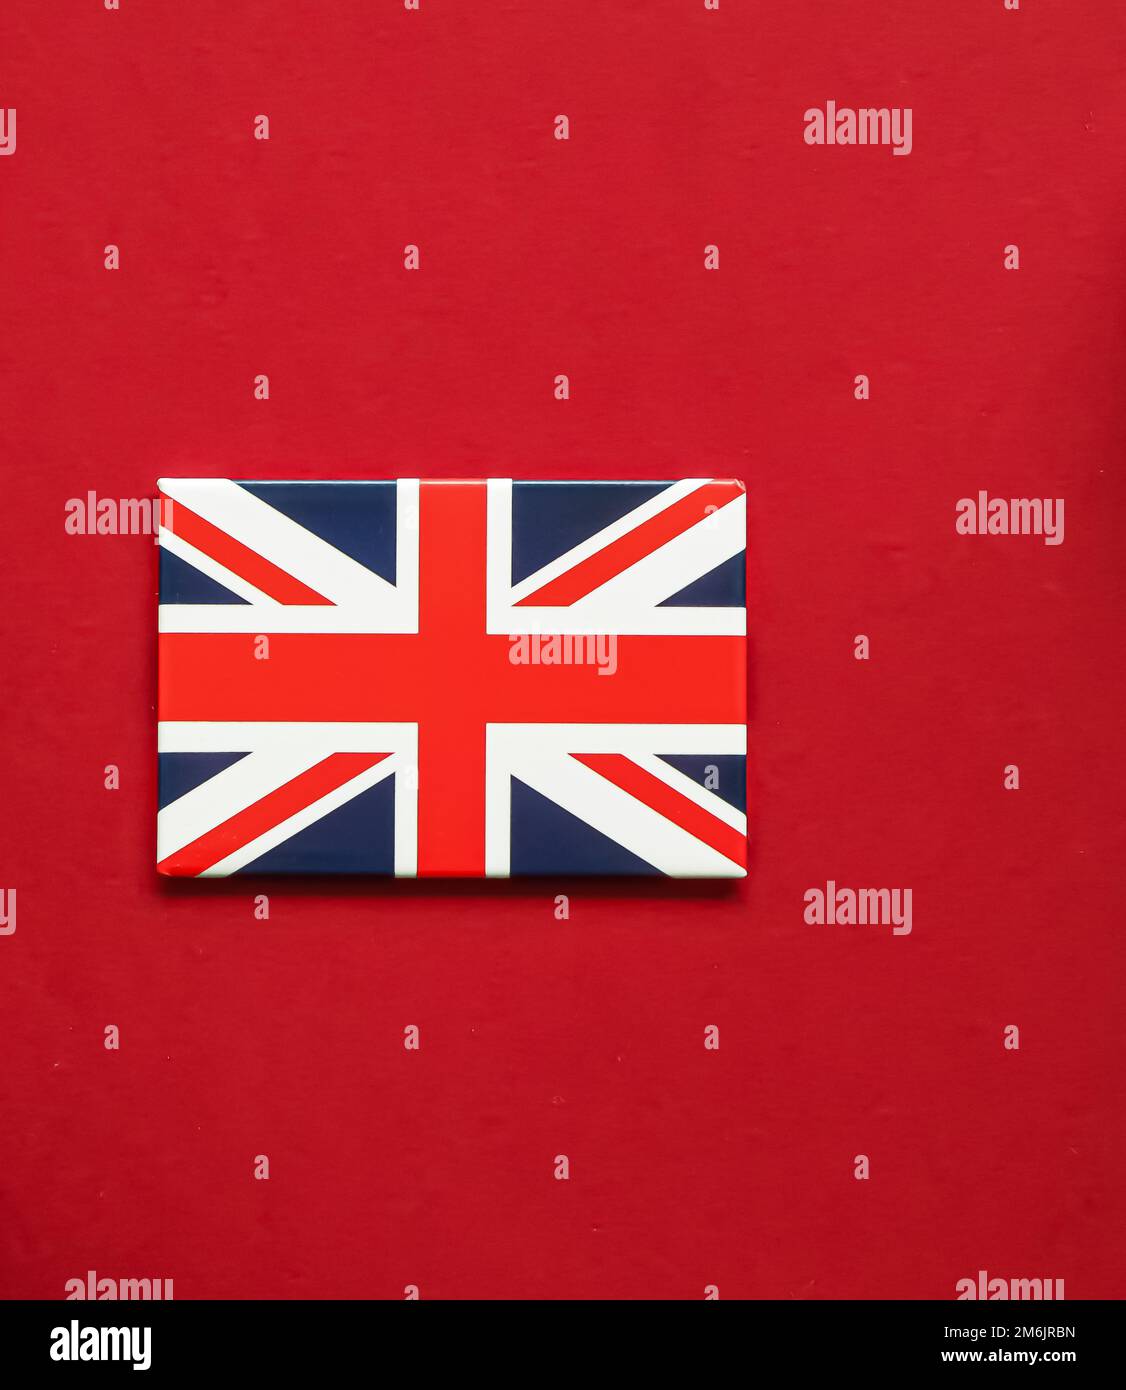 Hãy nhìn vào hình ảnh liên quan đến lá cờ Union Jack để cảm nhận sự hiện diện của quốc kỳ Anh trong không gian sống của bạn.